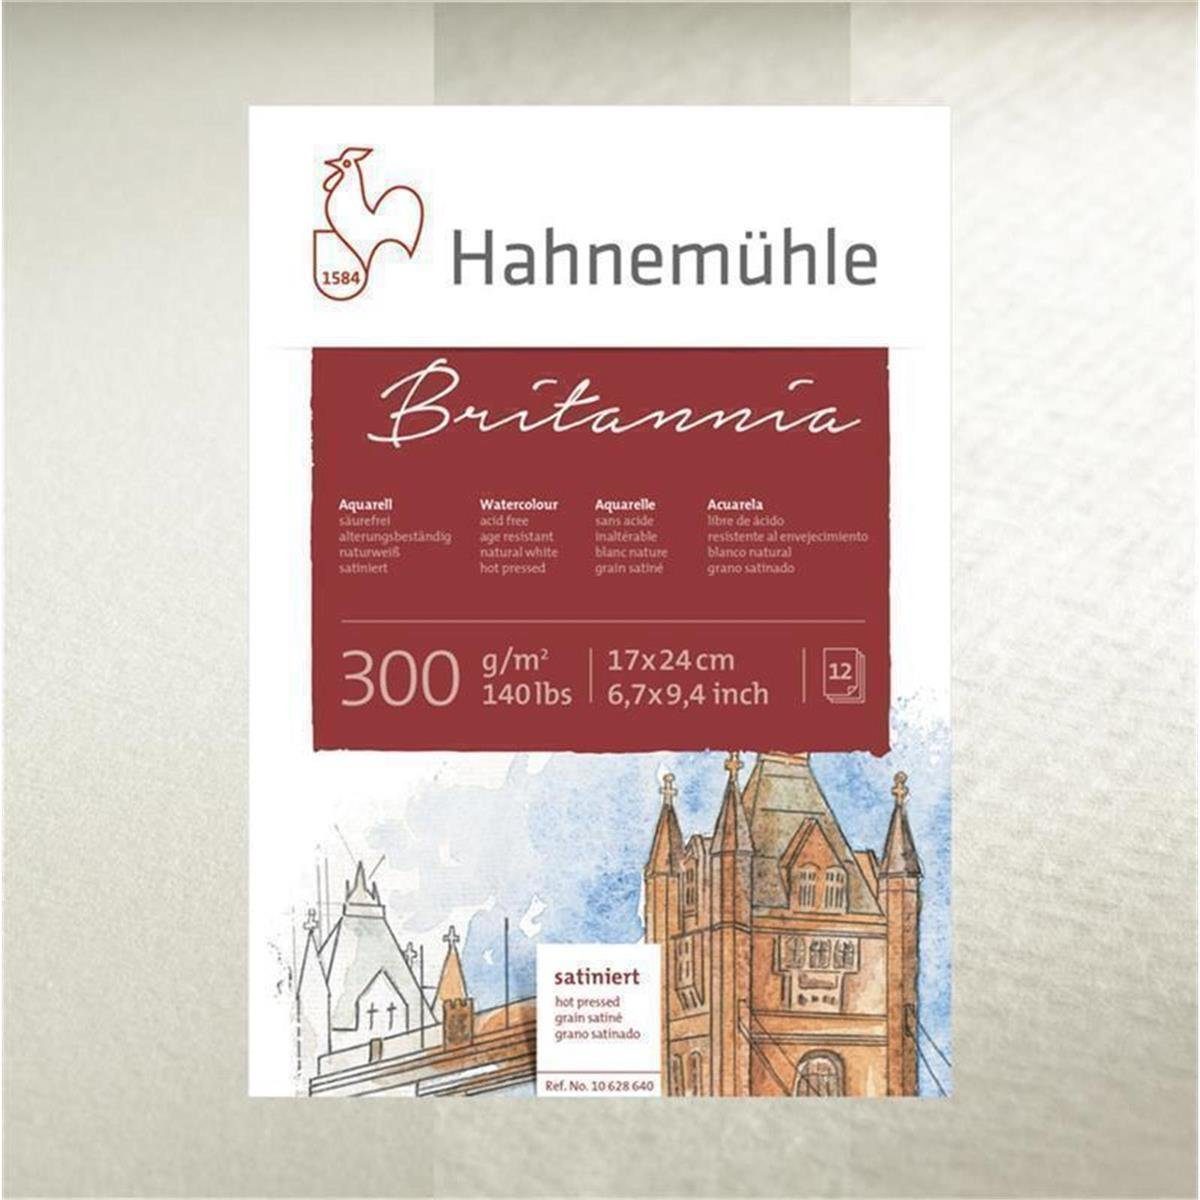 Hahnemühle Aquarellpapier Britannia Aquarellblock - satiniert - 300 g/m² - 42 x 56 cm - 12 Blatt